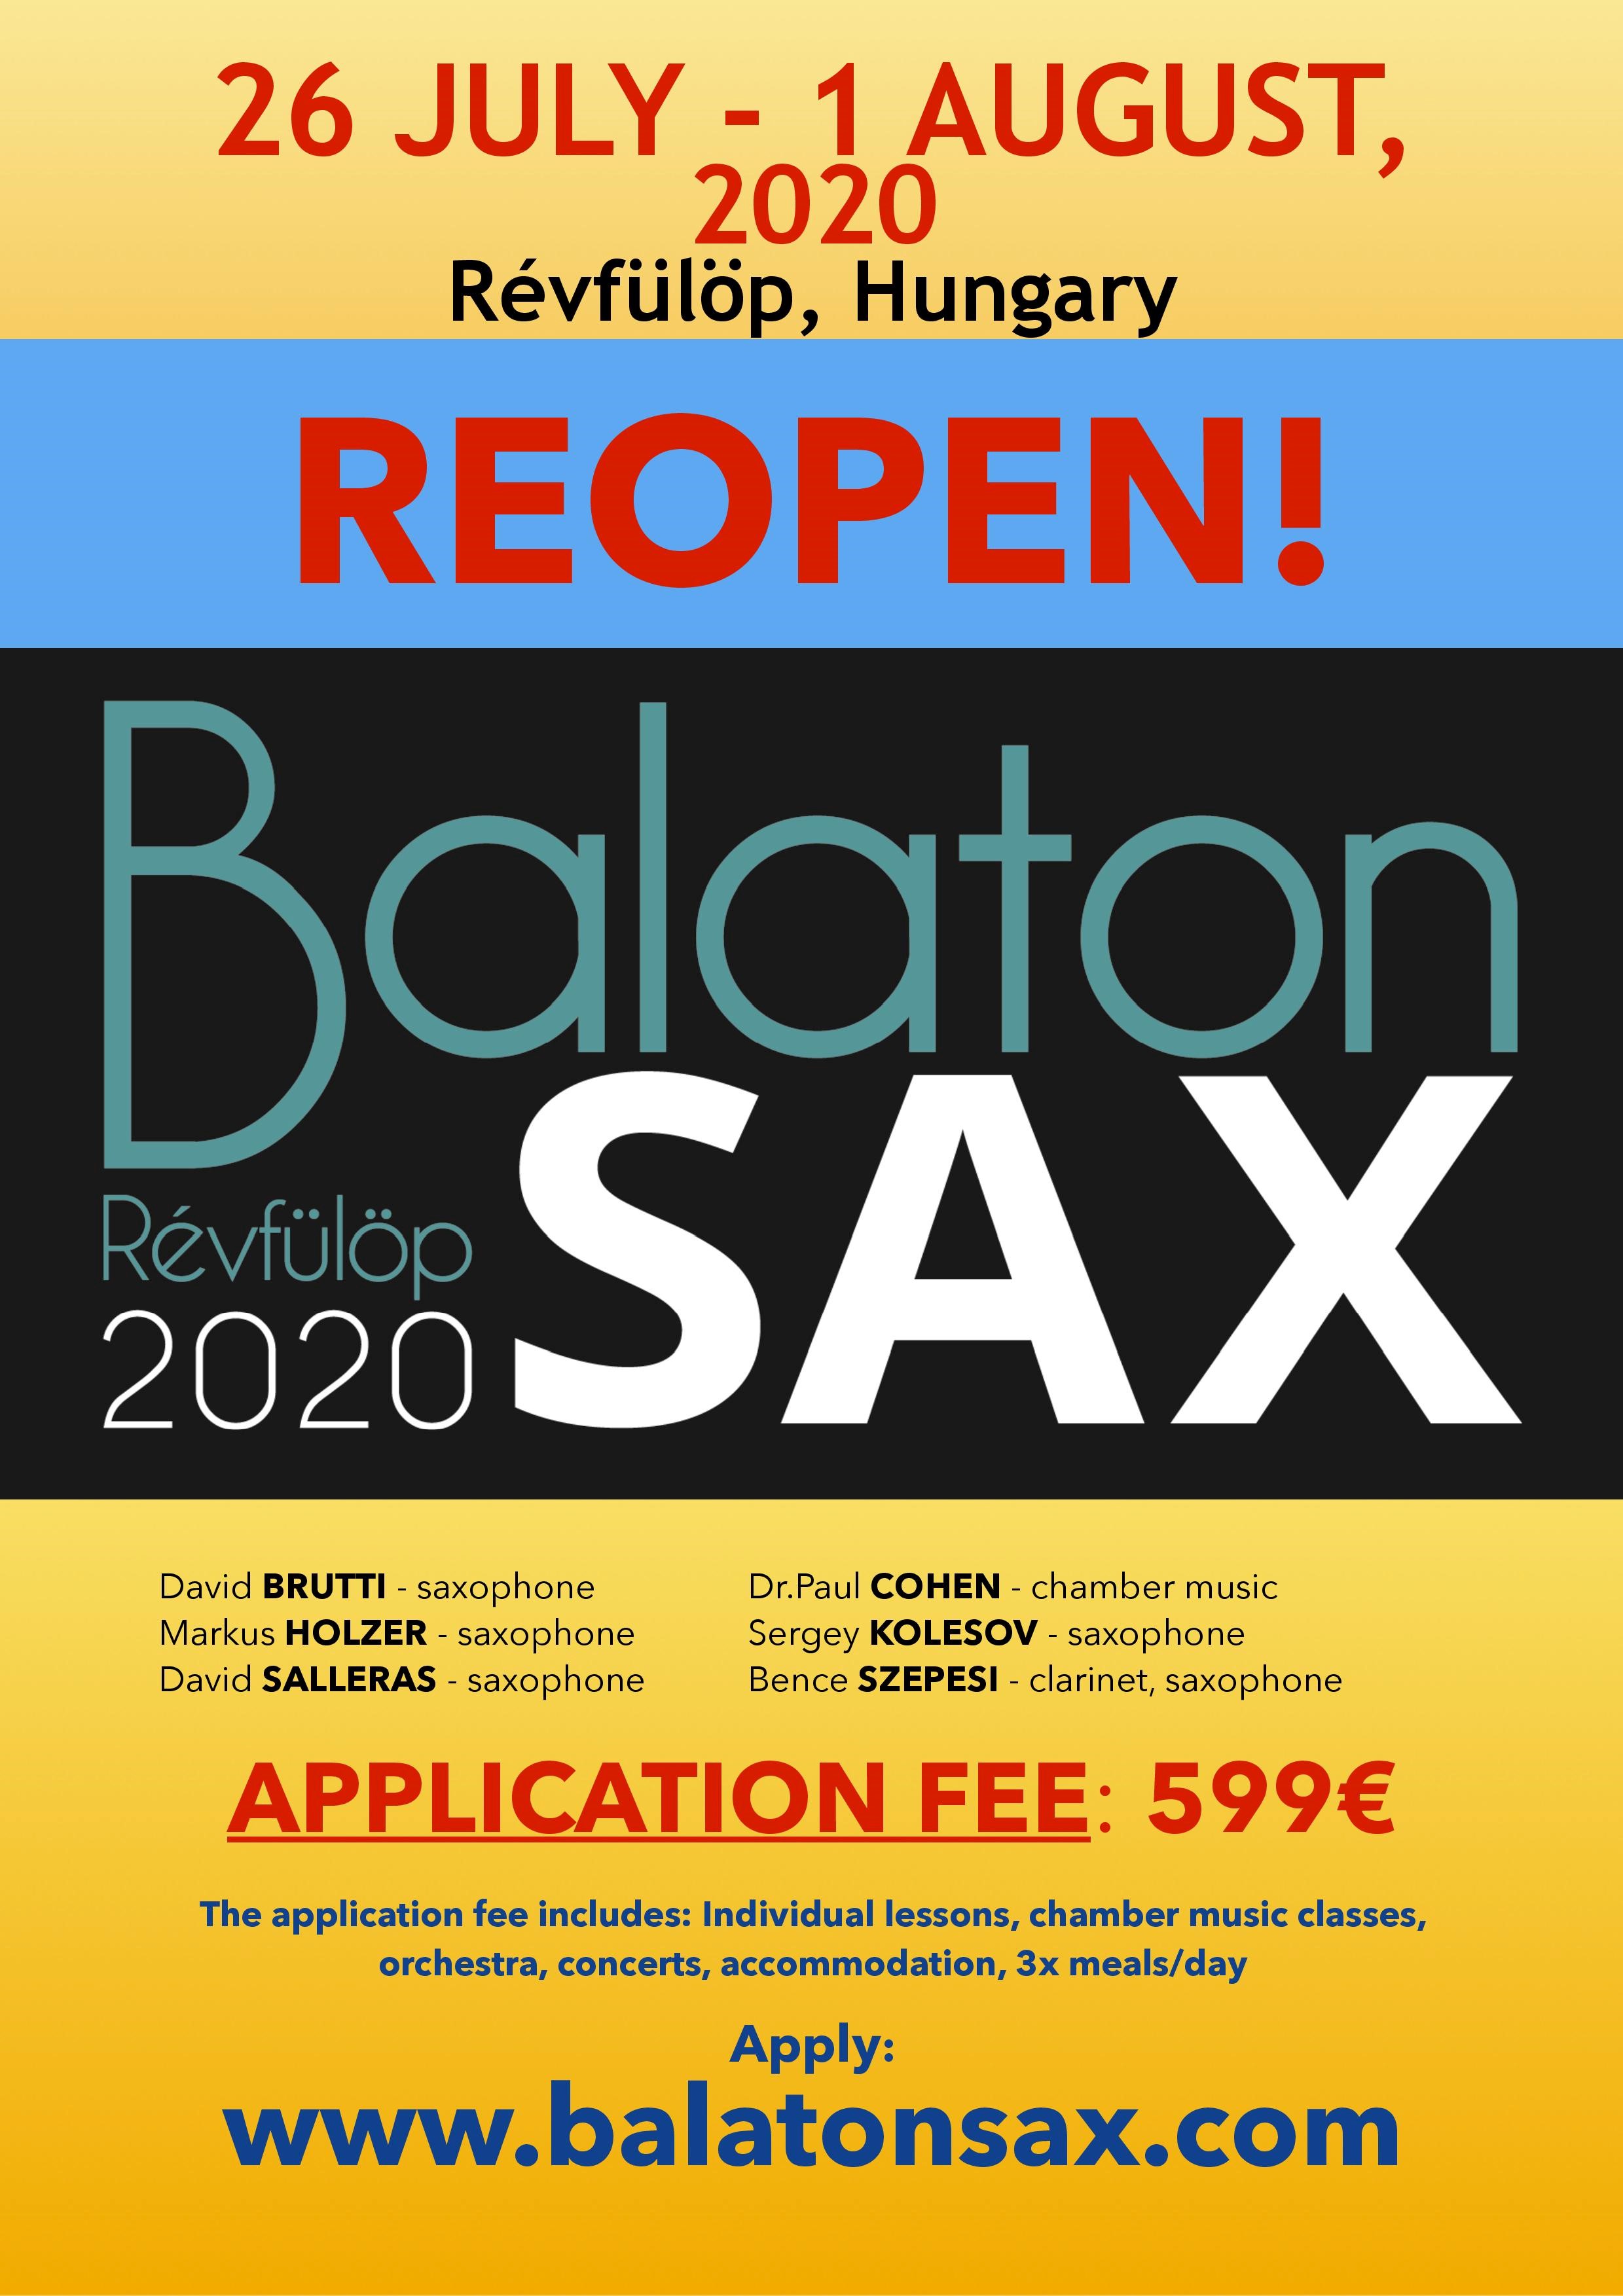 Balatonsax reopen